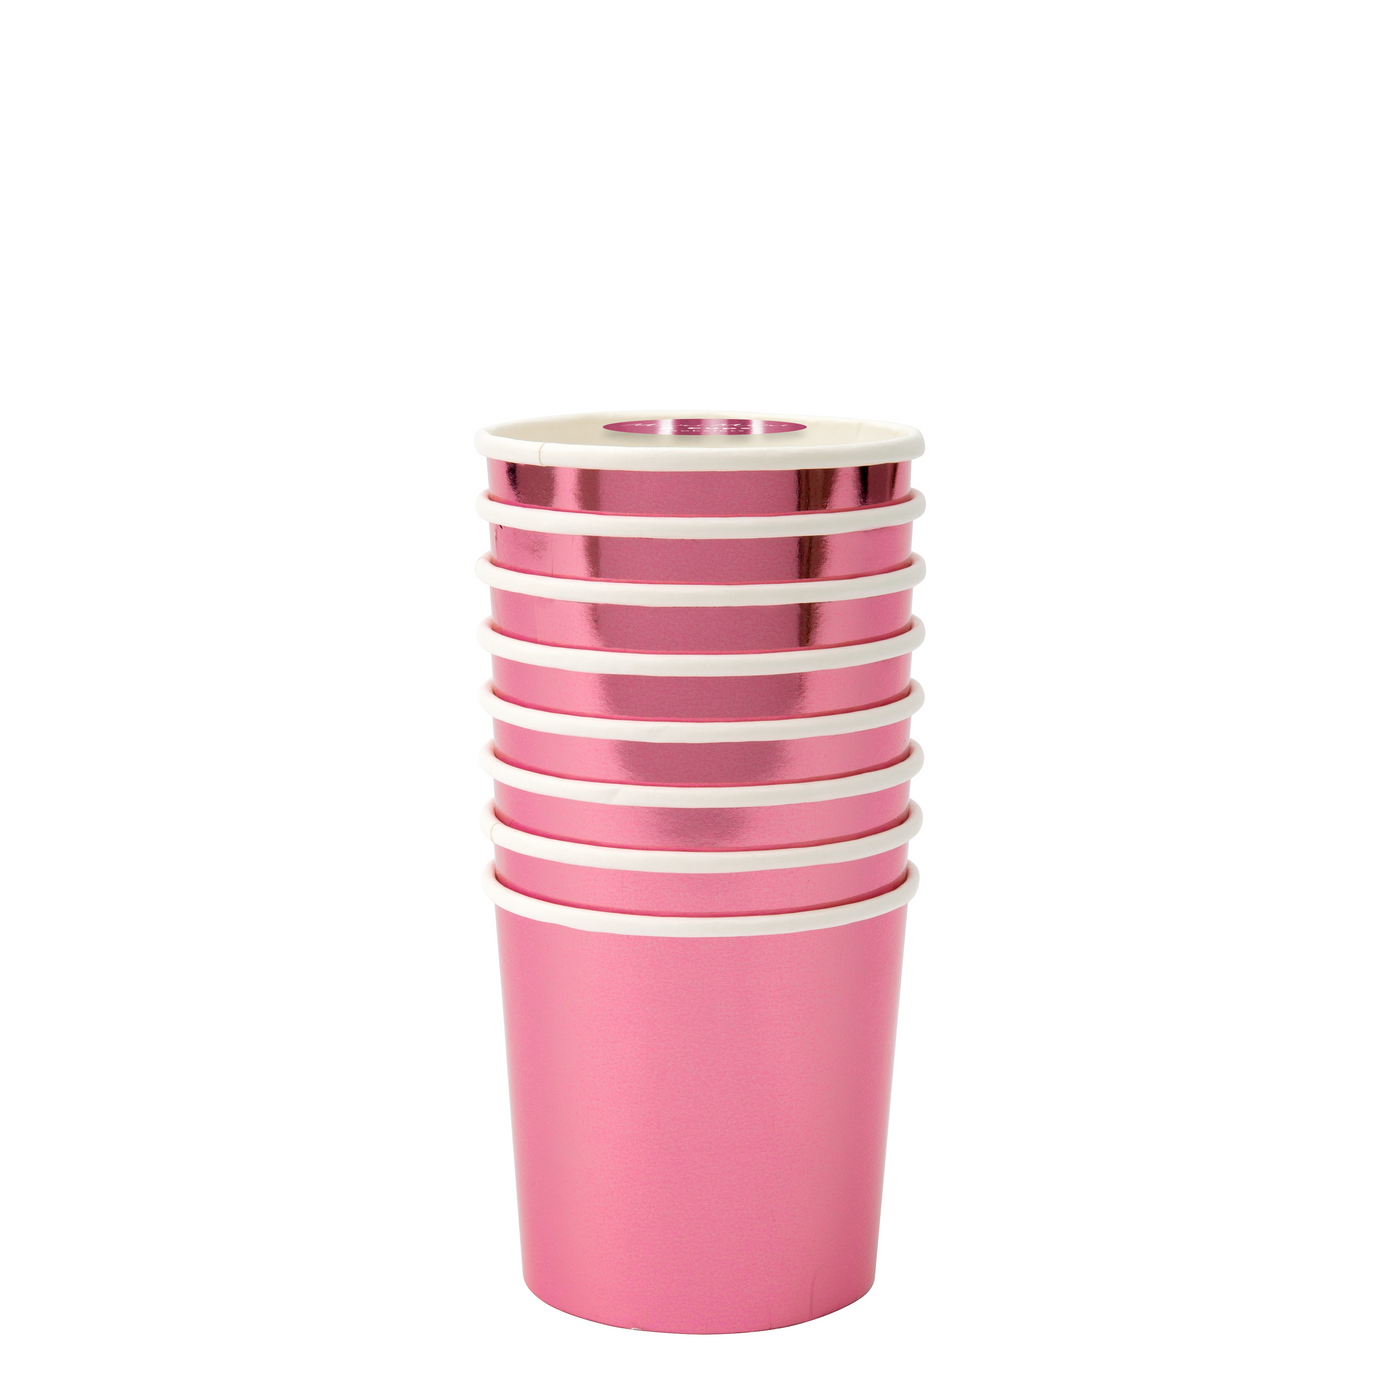 Metallic Pink Tumbler Cups - Ralph and Luna Party Shop